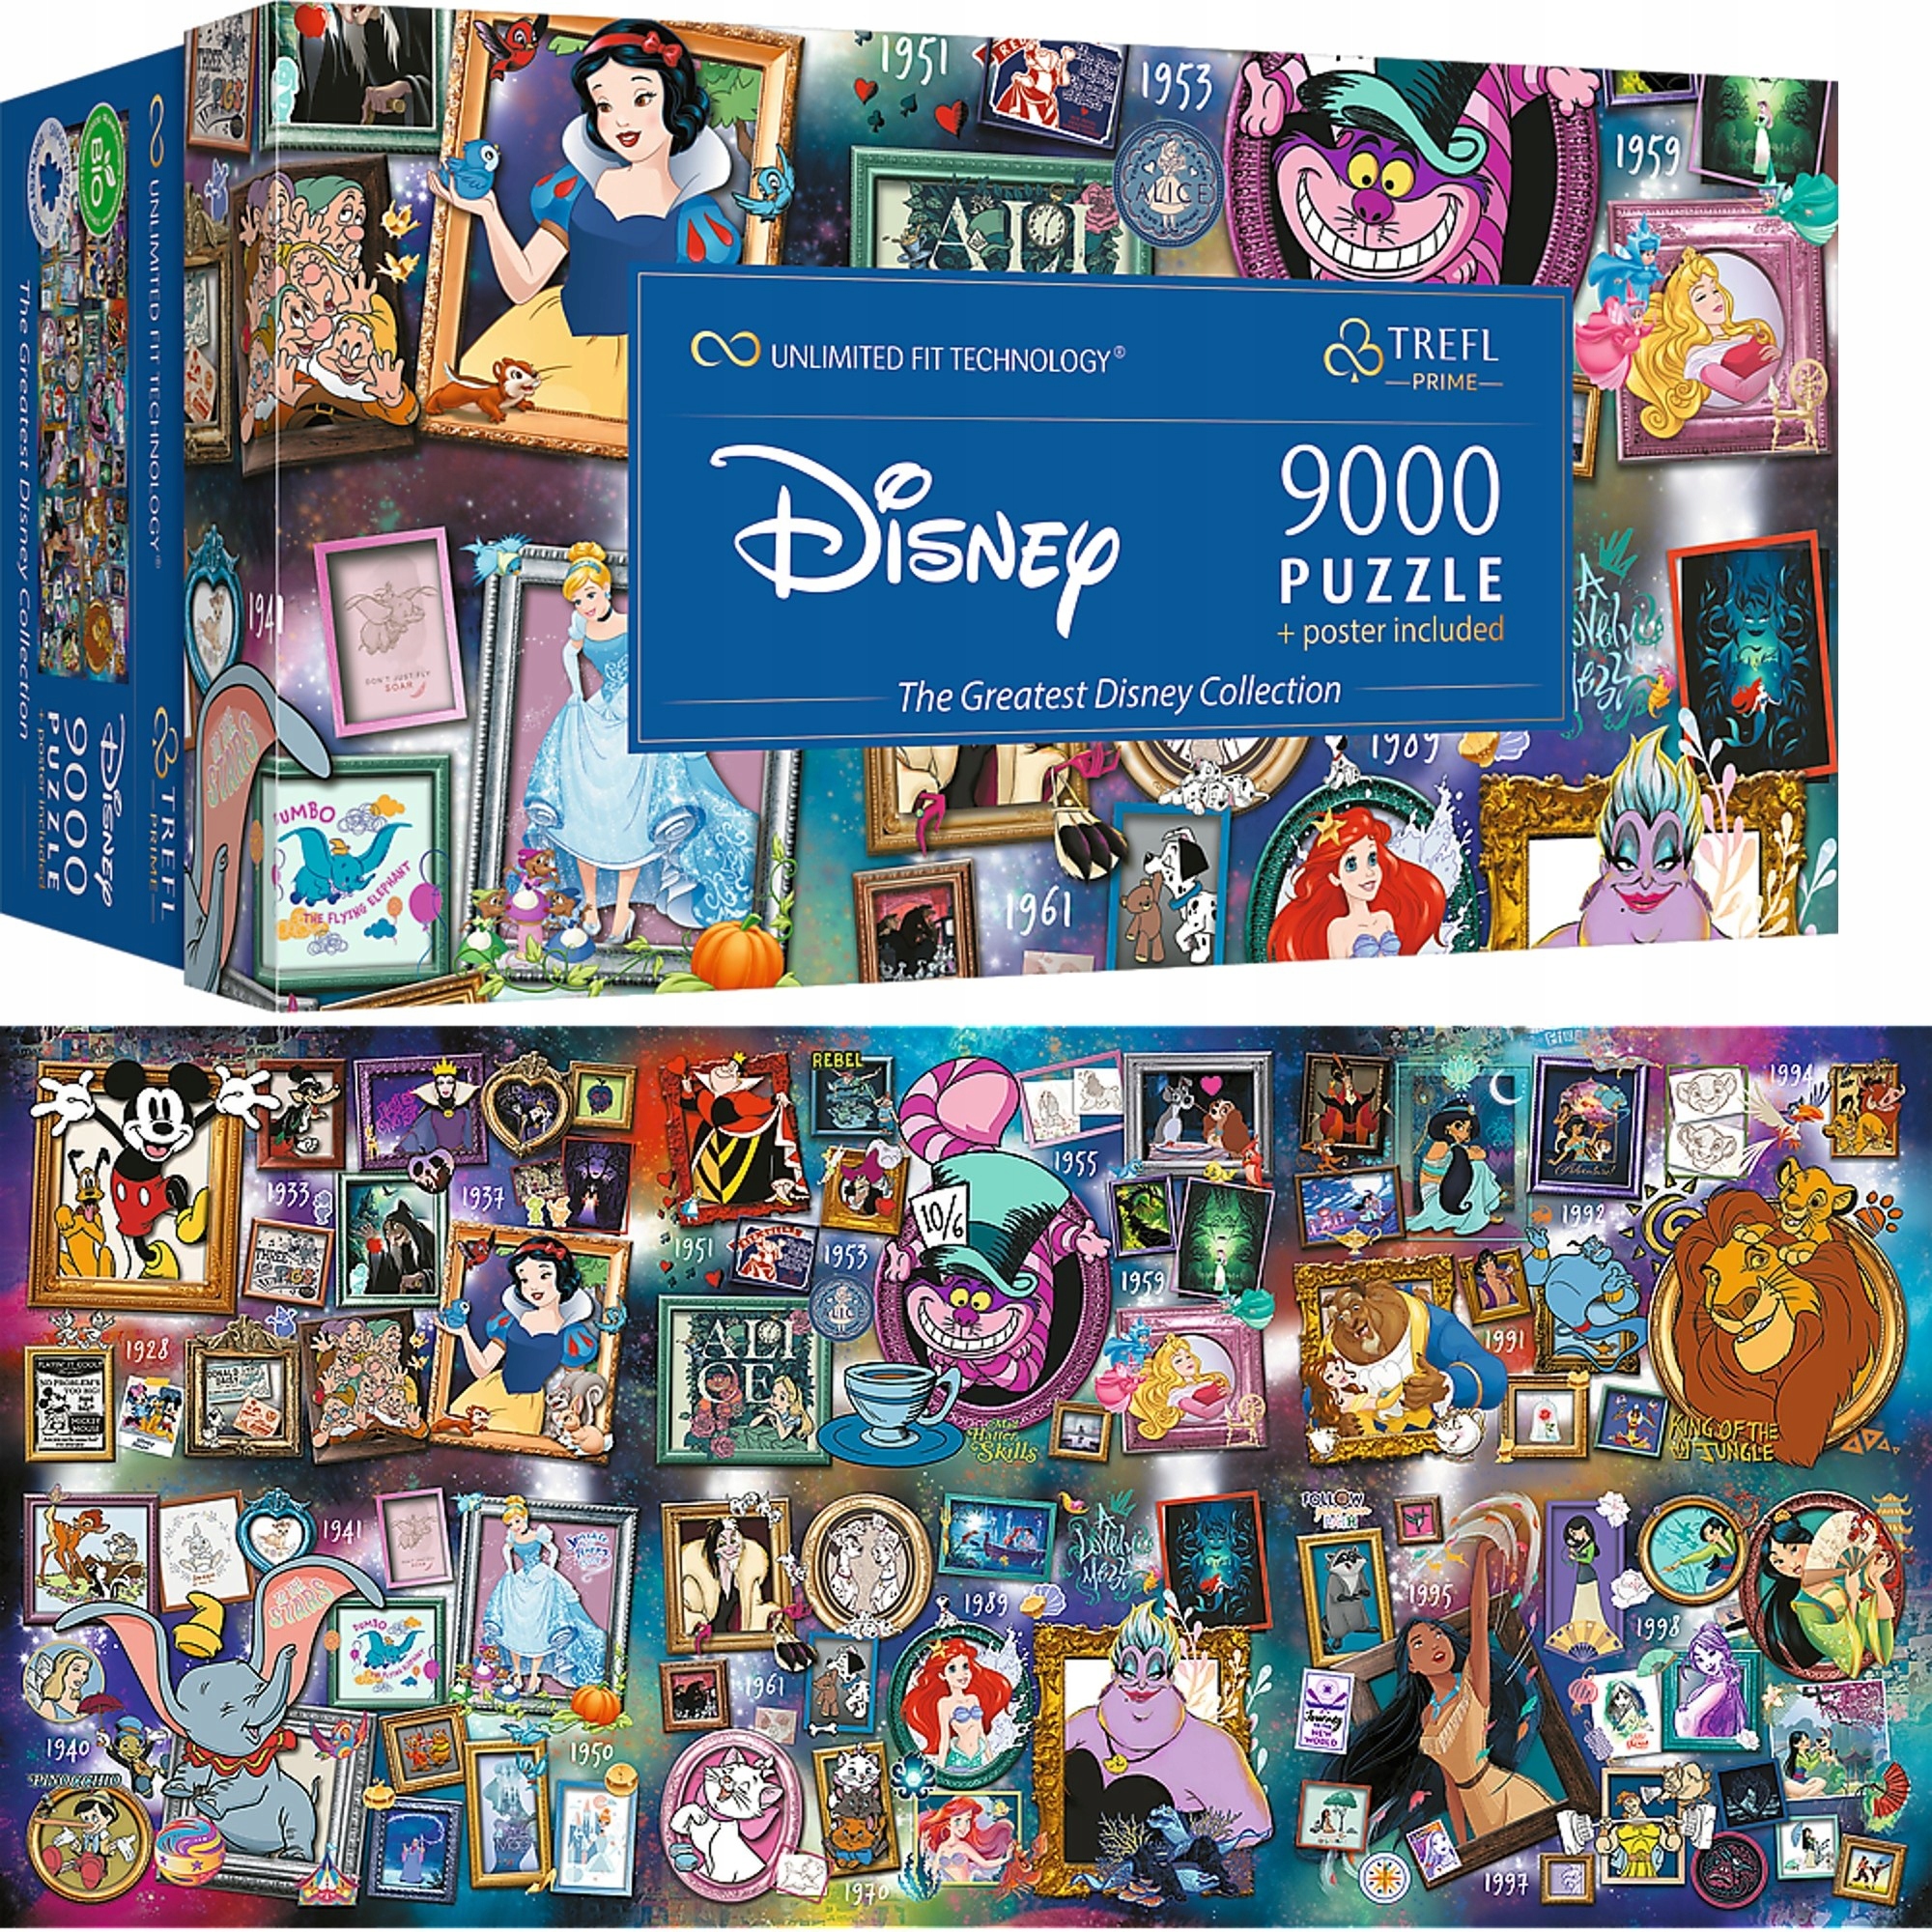 Puzzle 9 000 pièces Trefl Prime UFT - Collection Disney - Blanc